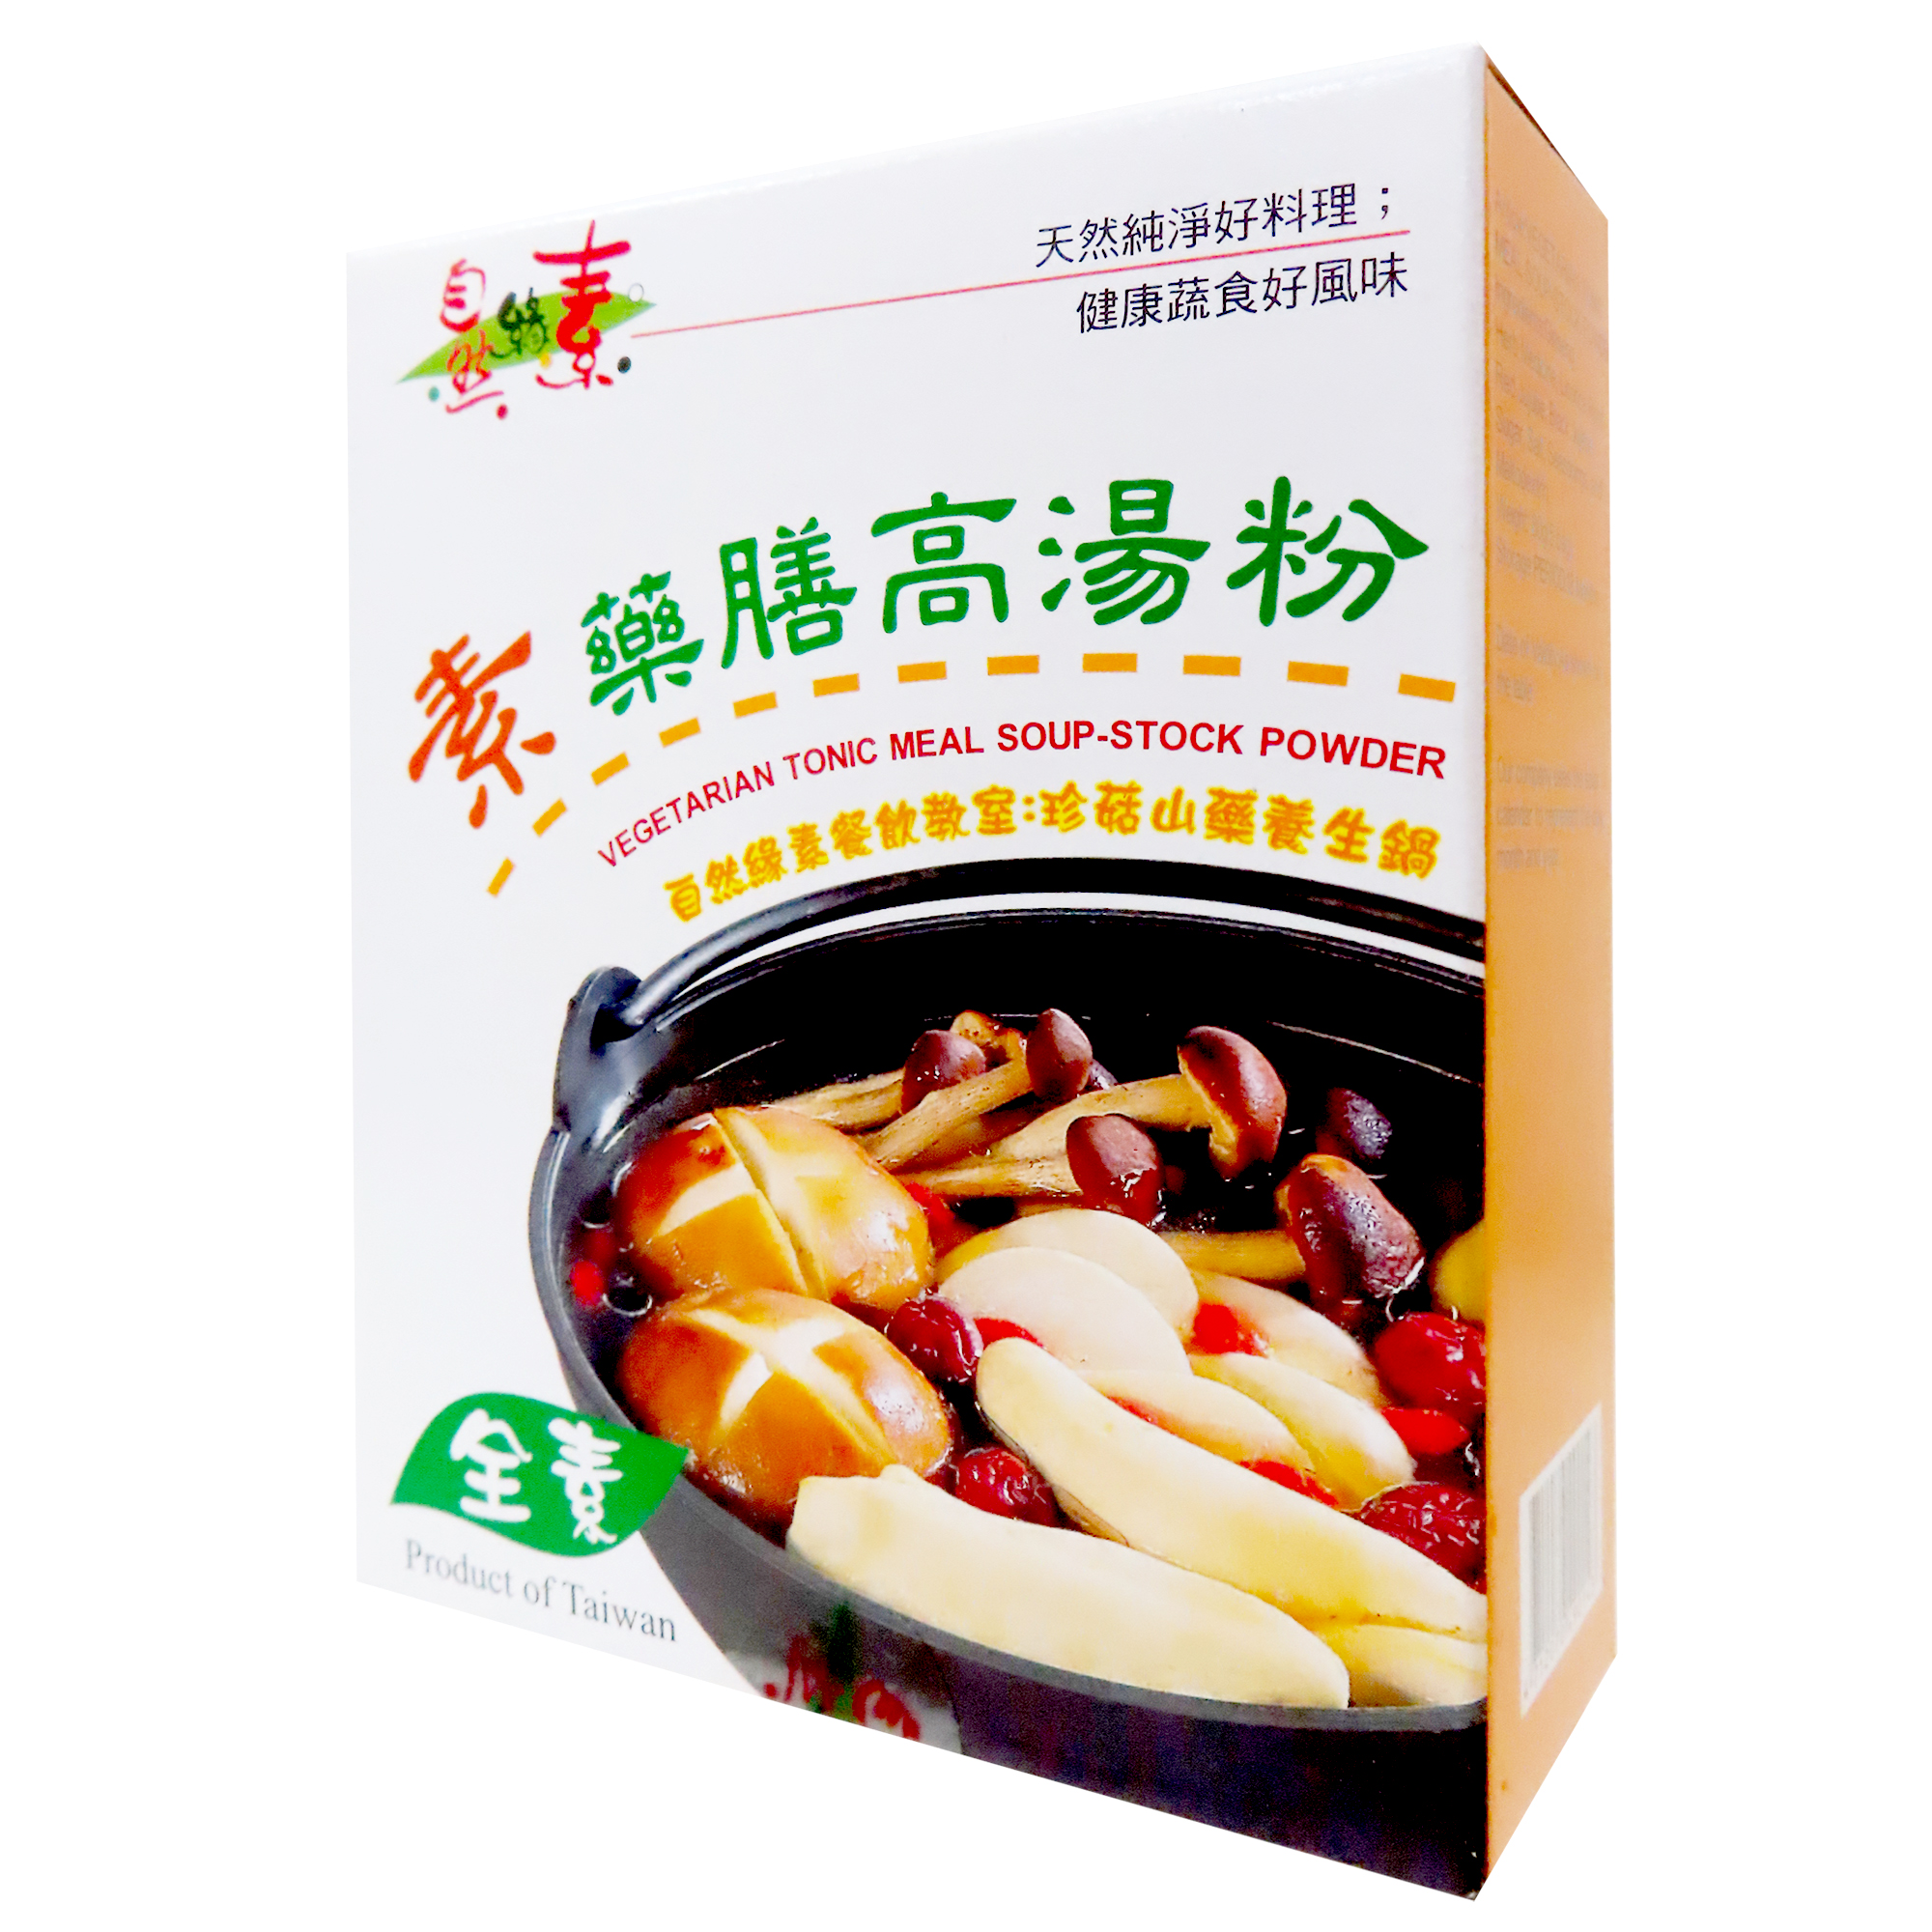 Image Tonic Meal Soup Stock Powder 佳饌-药膳高汤粉 80grams